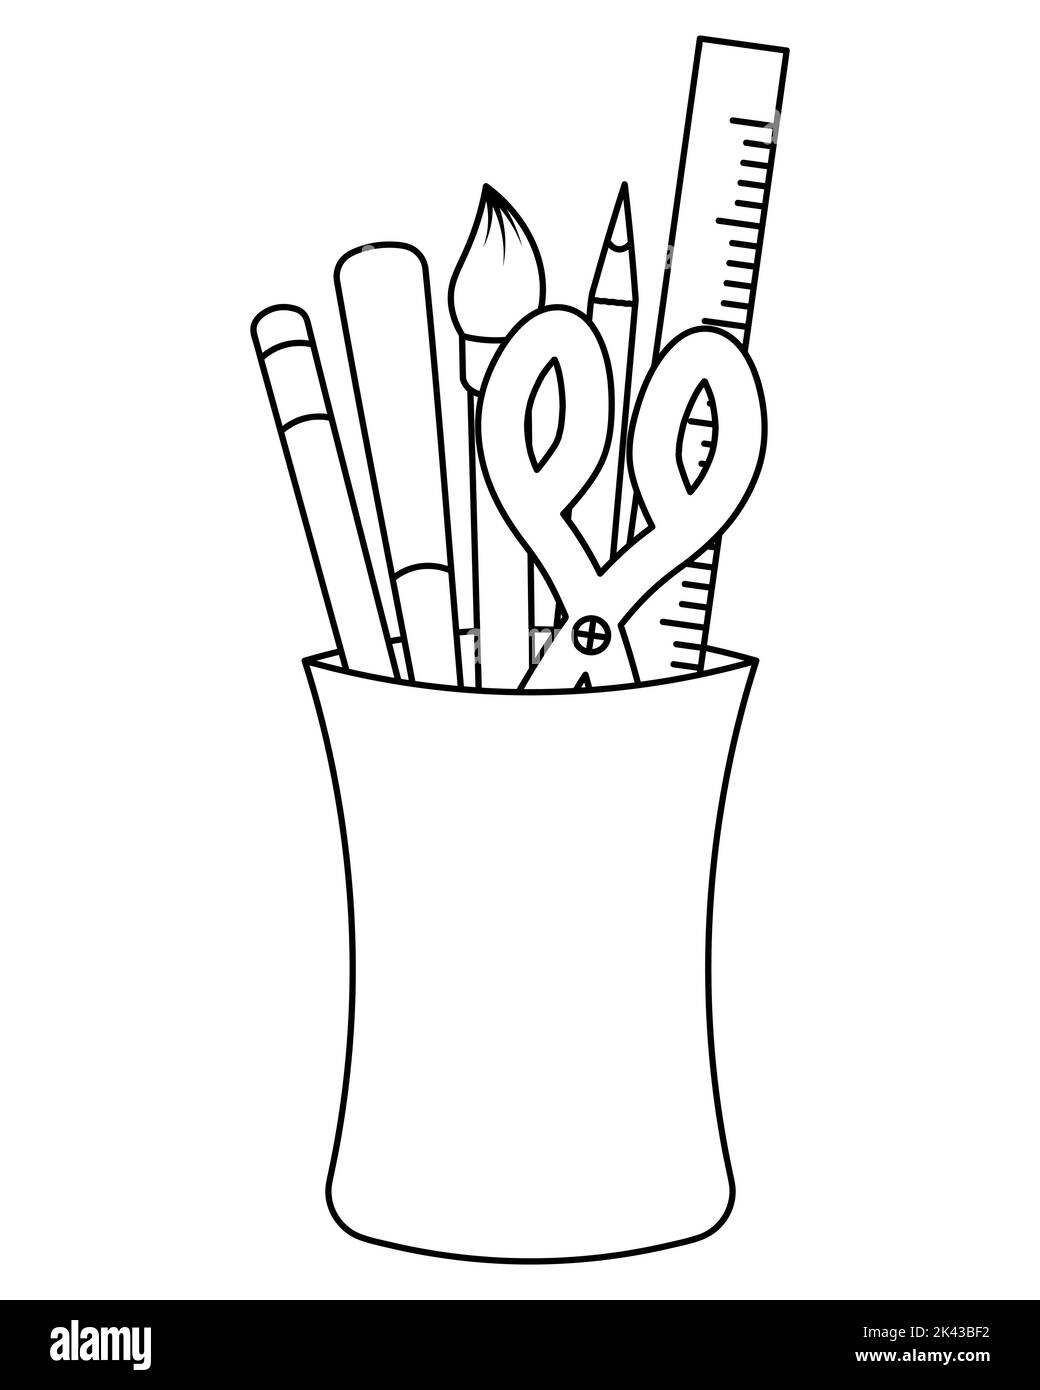 Un set di cancelleria in vetro. Schizzo. Forbici, penne, matita. Illustrazione vettoriale. Libro da colorare per bambini. Stile Doodle. Illustrazione Vettoriale